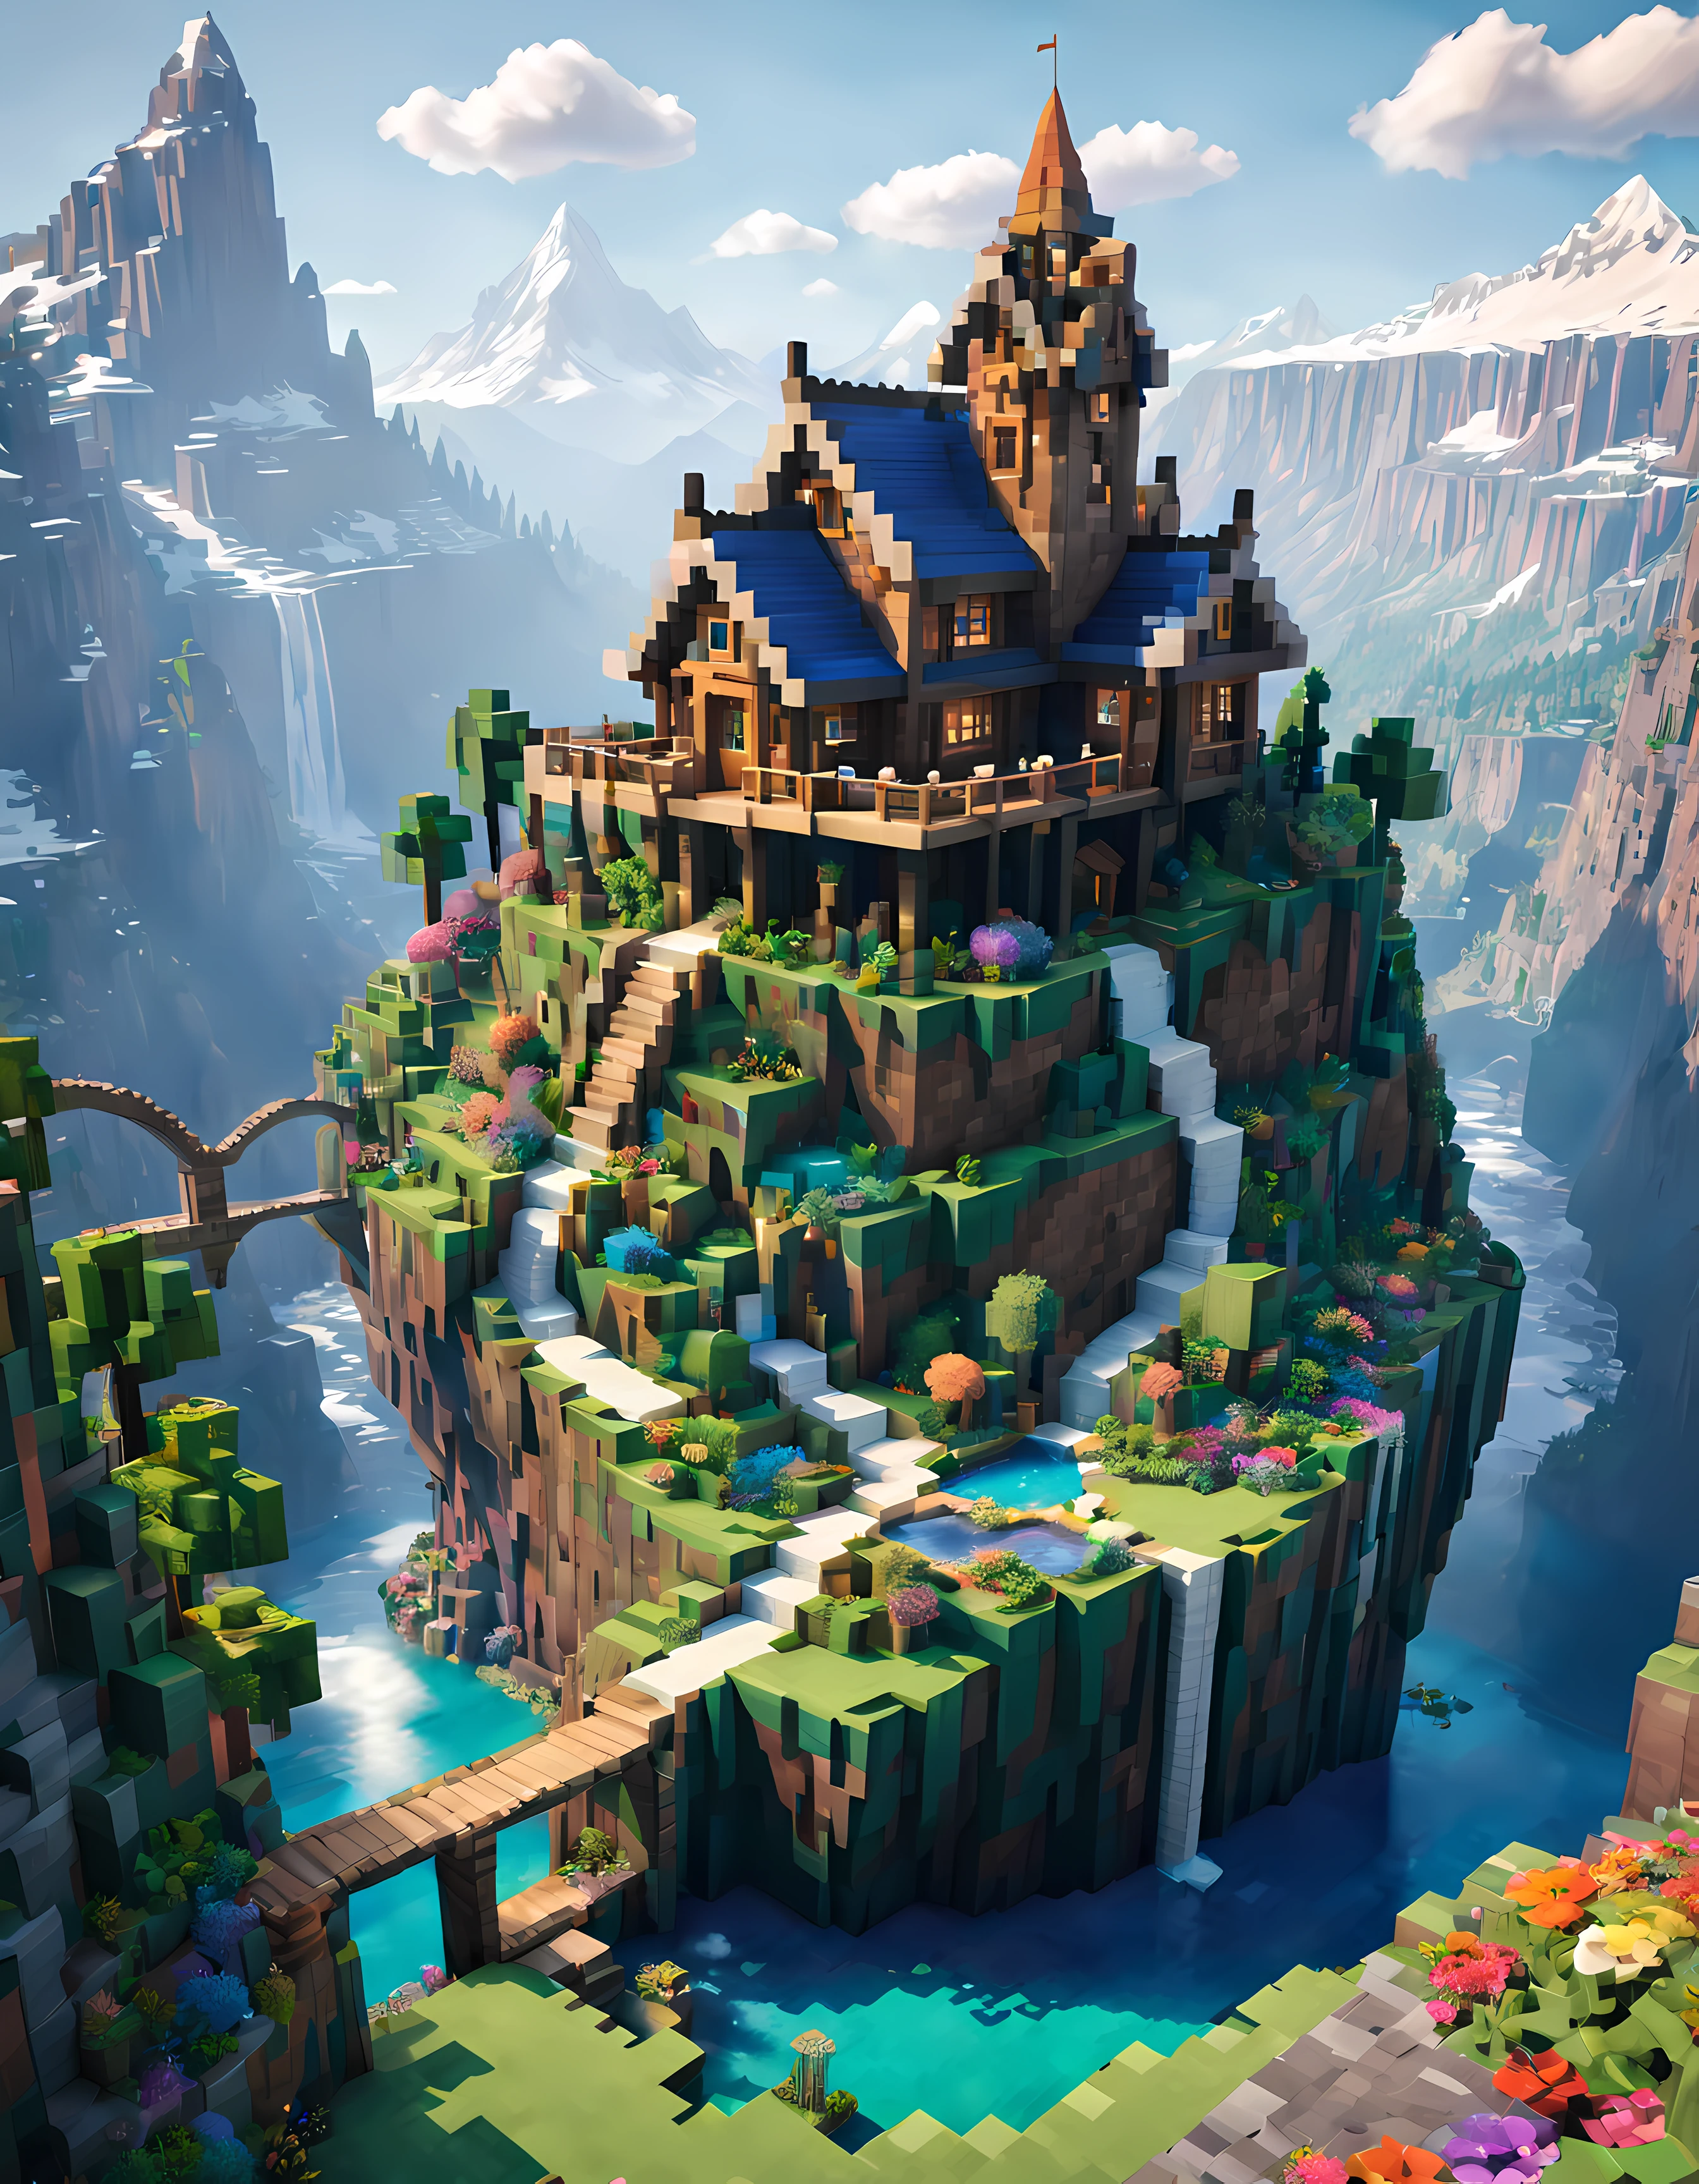 estilo Minecraft (Ultrarealista:1.3), (tiro lejano) de un (gran cabaña de hadas alta:1.2) con ventanas redondas, on top de un rocky hill, arte ambientalwork, arte ambiental, (decoraciones elegantes), (río místico), (hermoso:1.4), (atractivo:1.3), nevado épico (montañas), naturaleza de verano, en bloque, pixelado, colores vibrantes, (águila), flores, puentes etéreos, waterfalls En la distancia, (arcoíris:0.5), (árbol del mundo) En la distancia